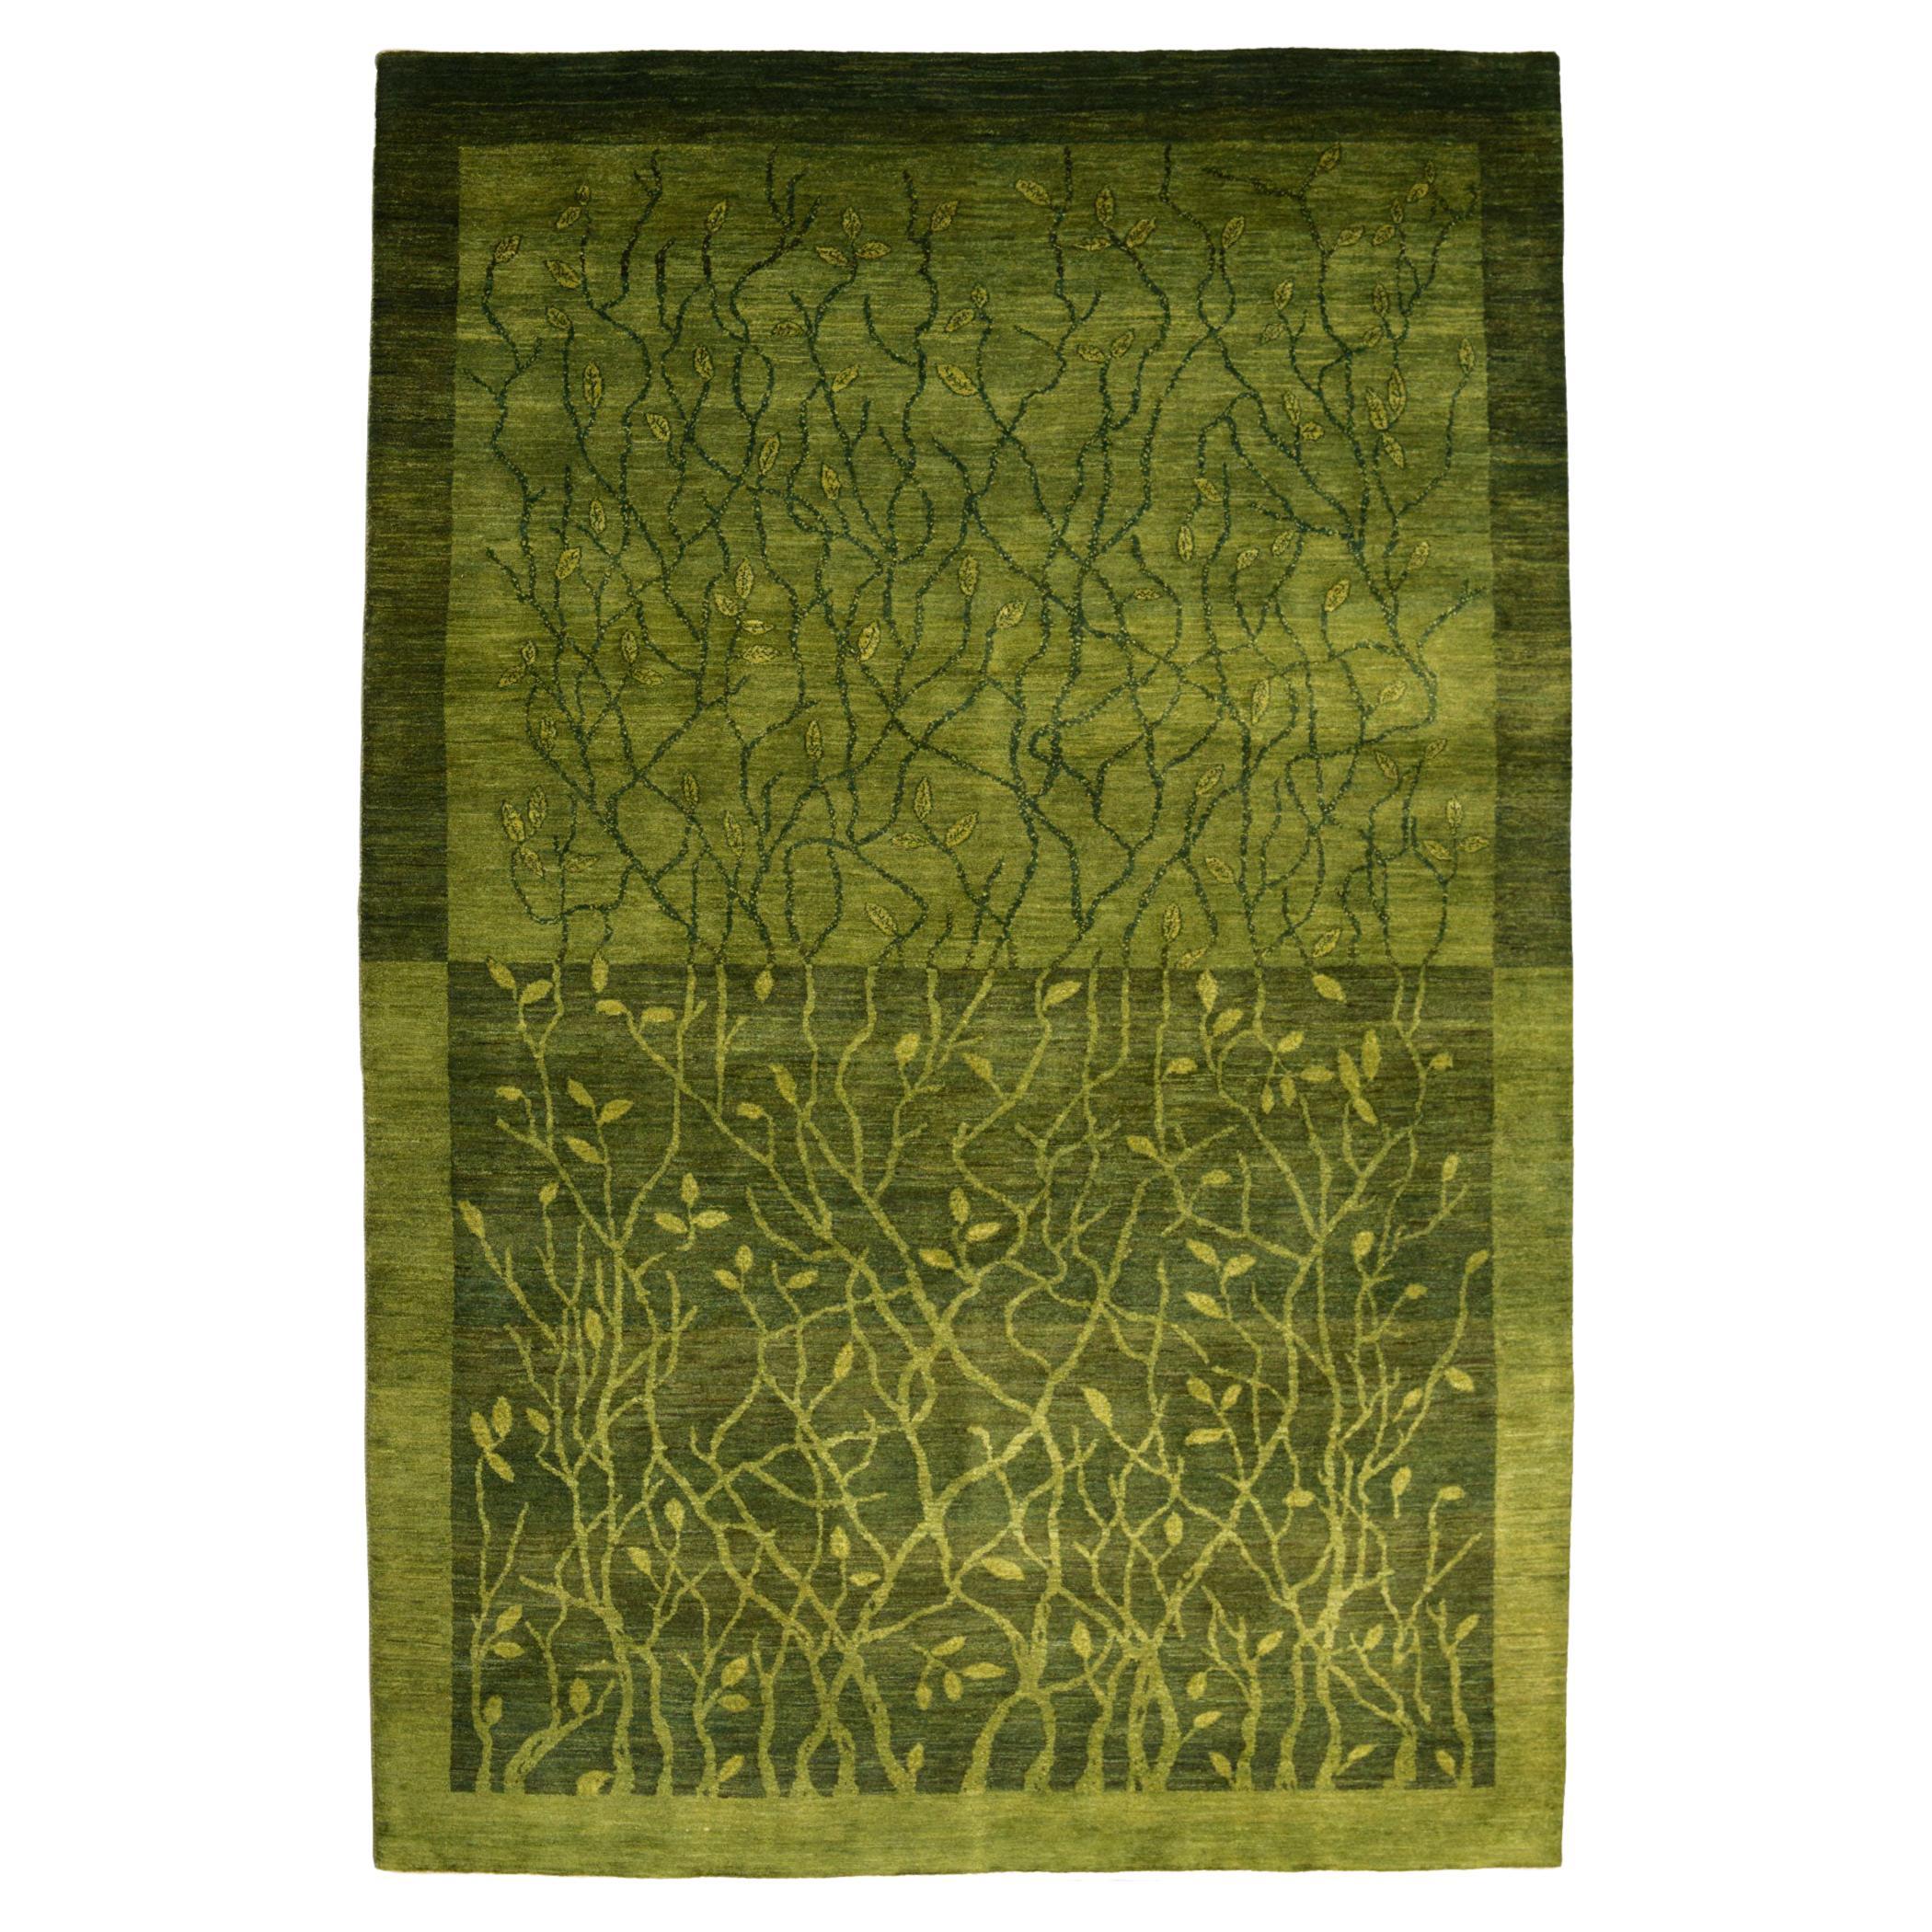 Green Mid-Century Persian Kashkouli Rug, Orley Shabahang, 6' x 9'